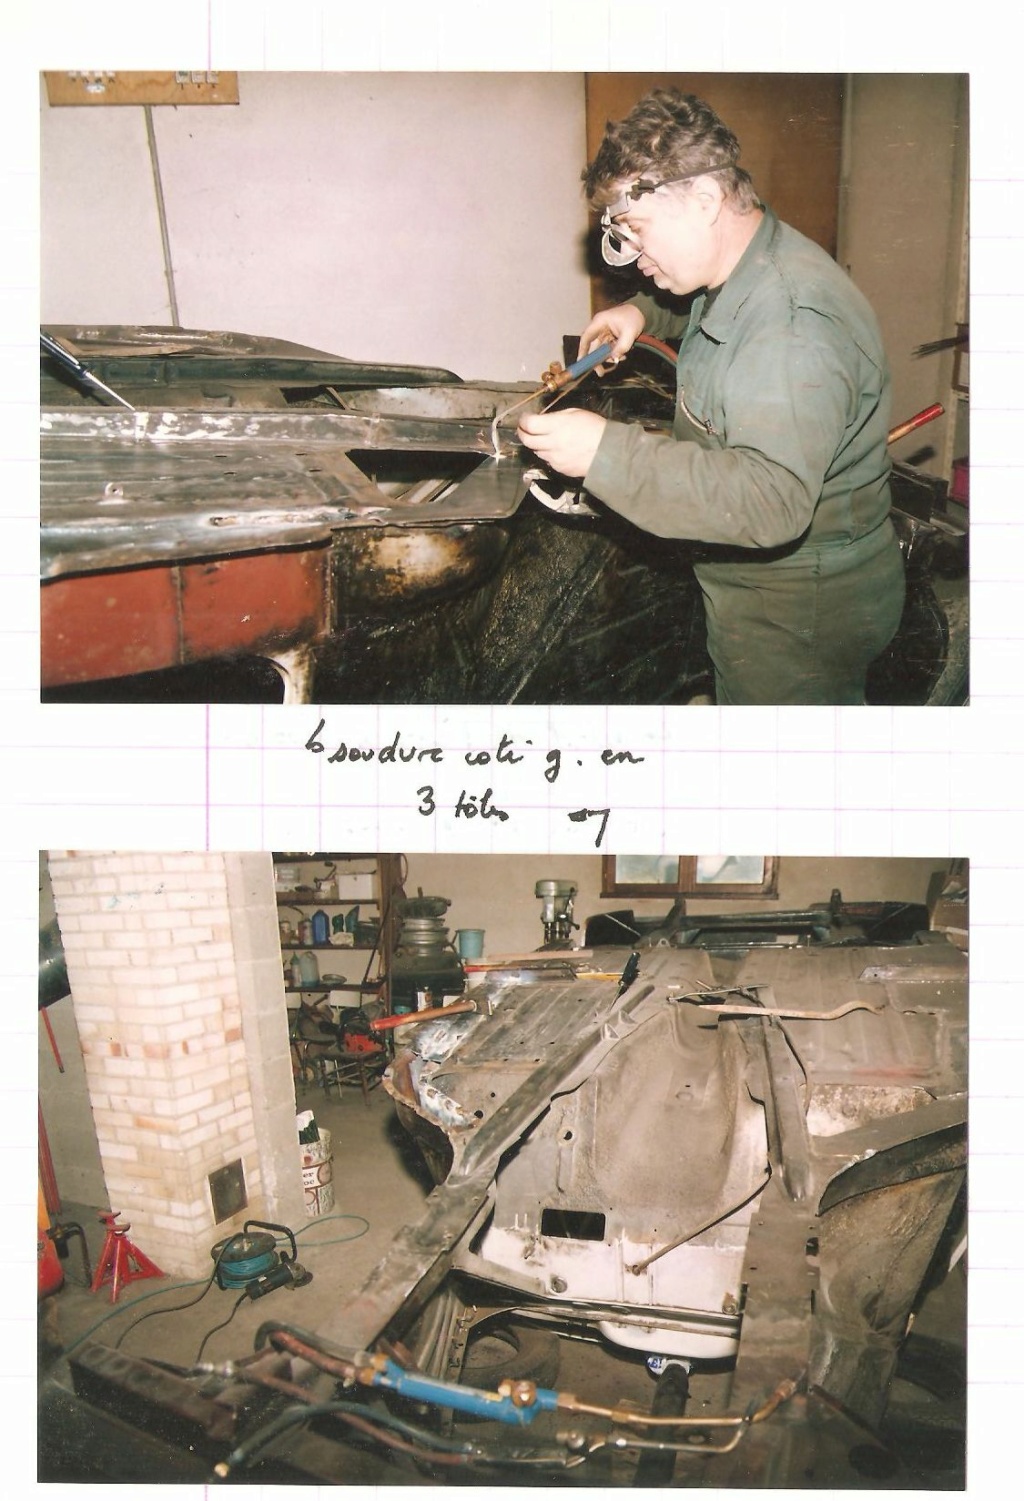 Restauration Peugeot 203C 1960 (rétrospective 1991-1992) - Page 2 Scan_816